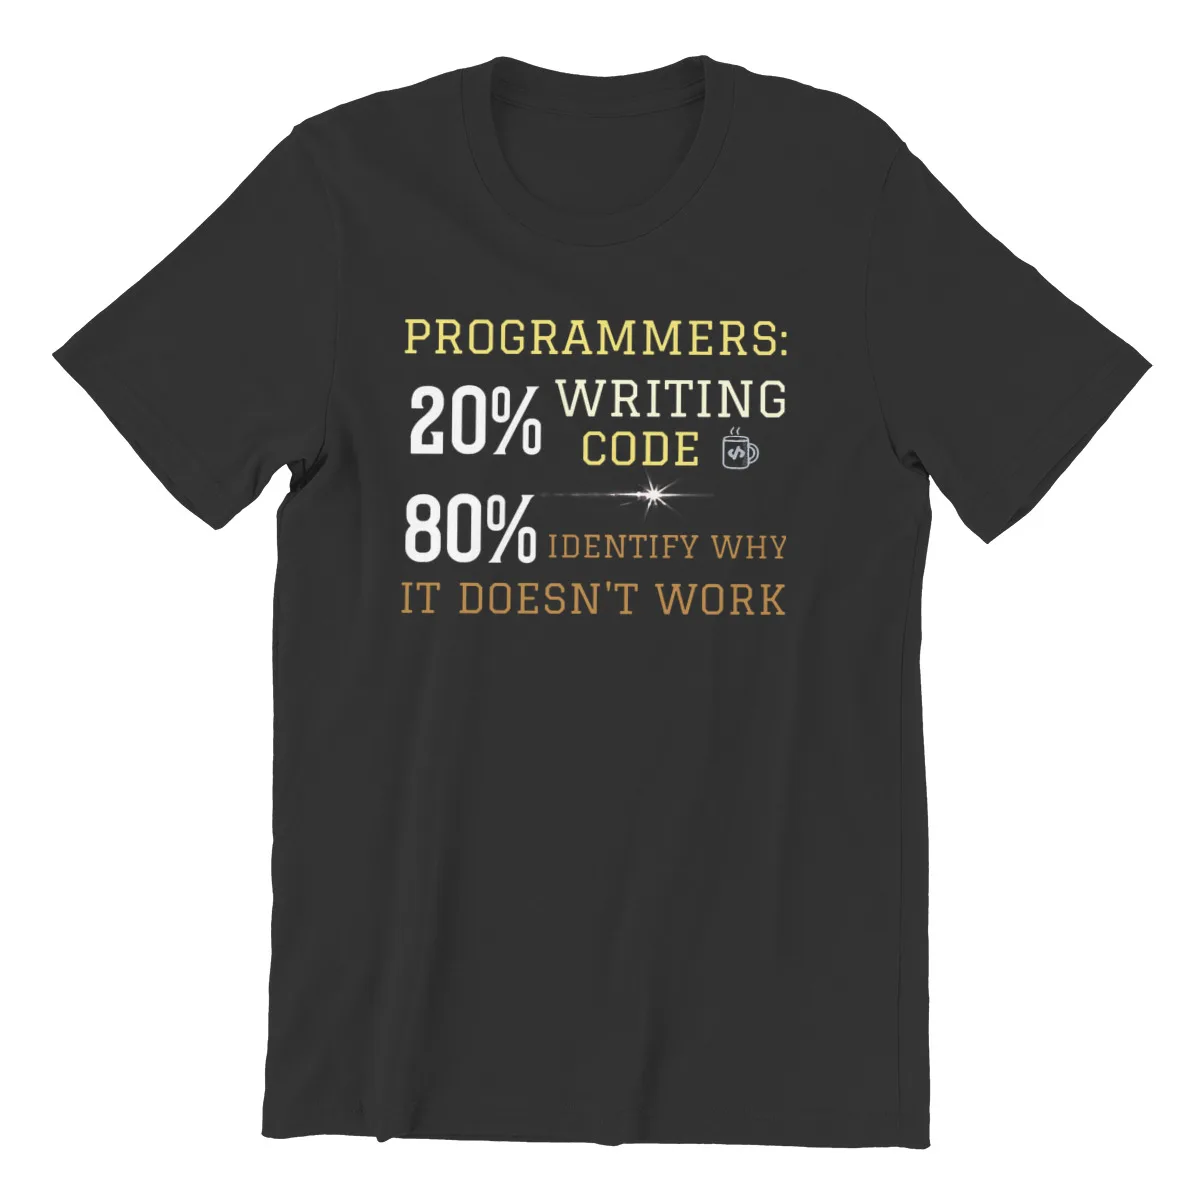 20% כתיבת קוד 80% לזהות למה זה לא עובד היפ הופ חולצת טי תוכנה מפתחים זה מתכנת חנון T חולצה חולצה